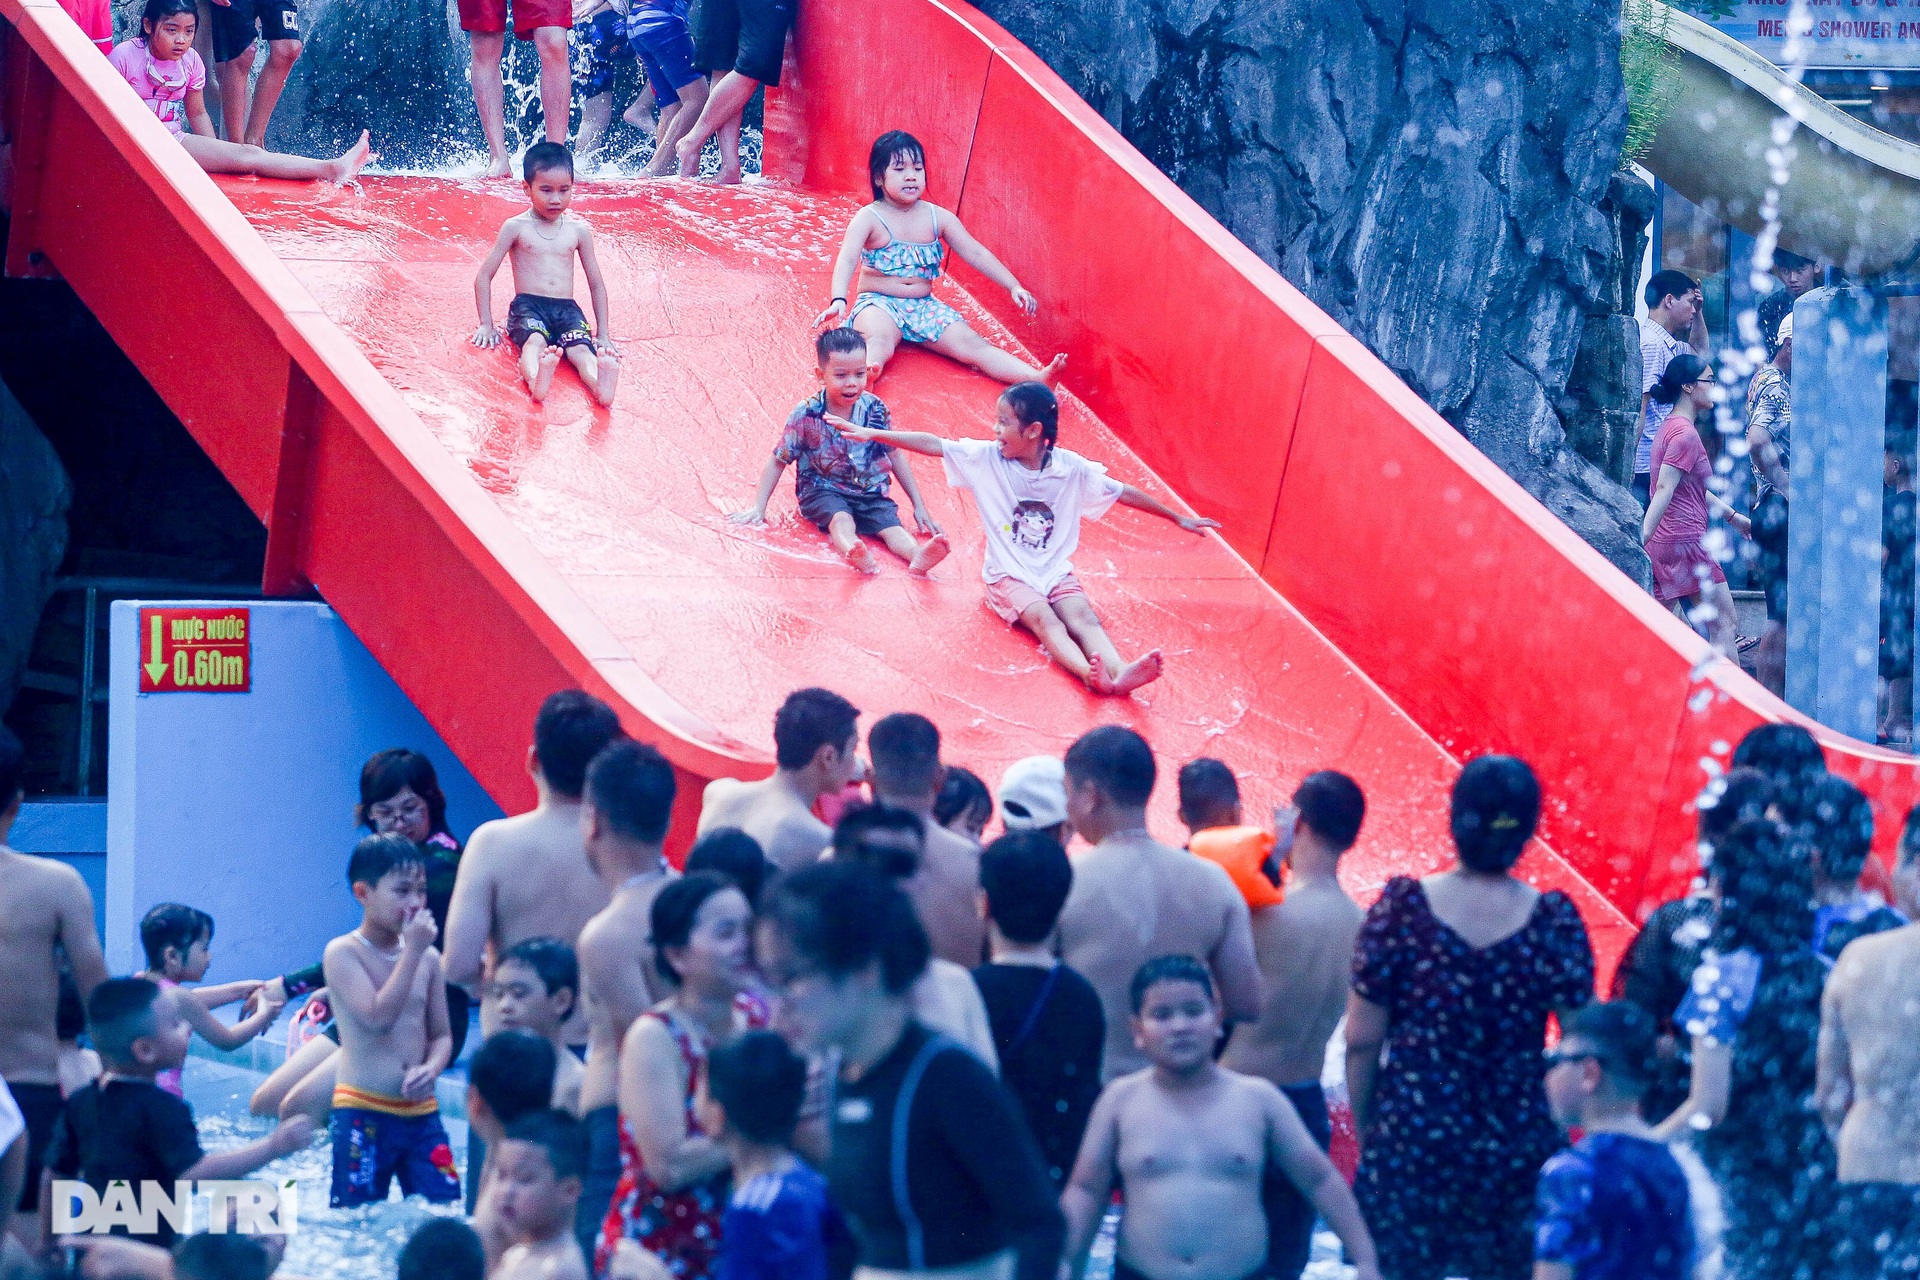 Chen chân chật kín trong công viên nước ở Hà Nội ngày nghỉ lễ - 9